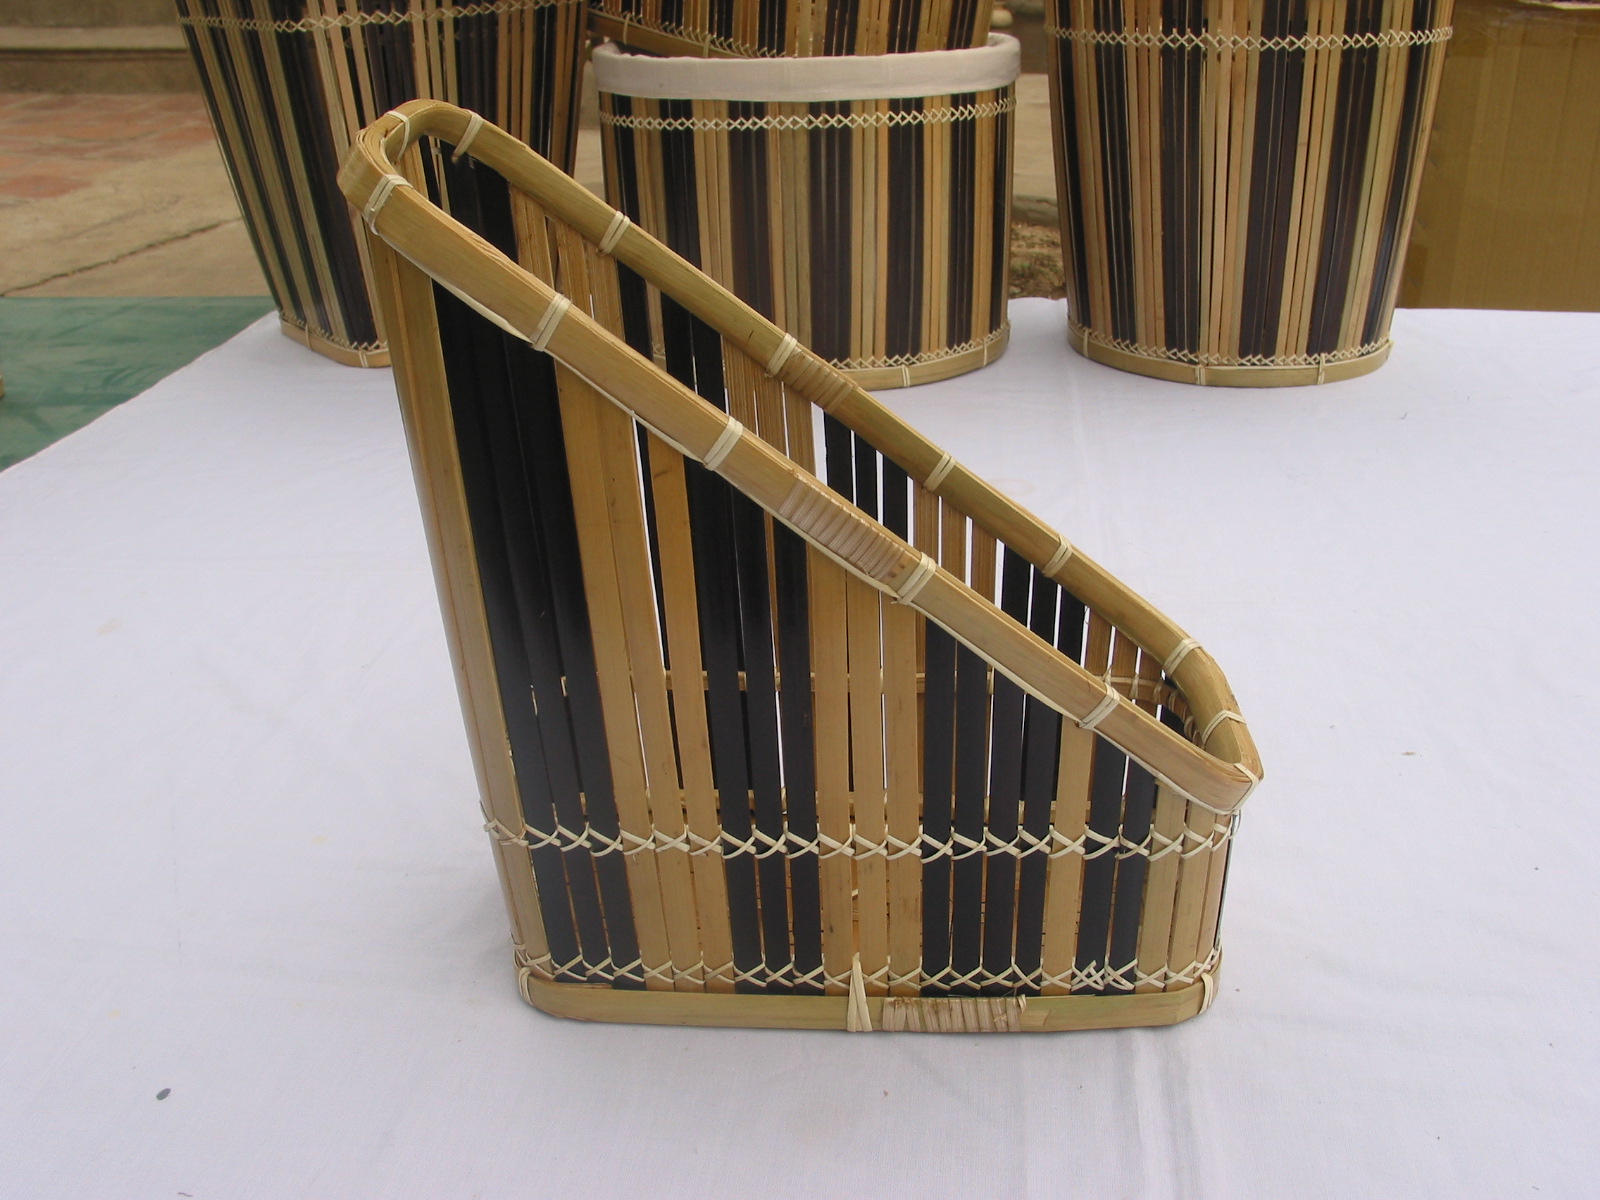 Bamboo Basket